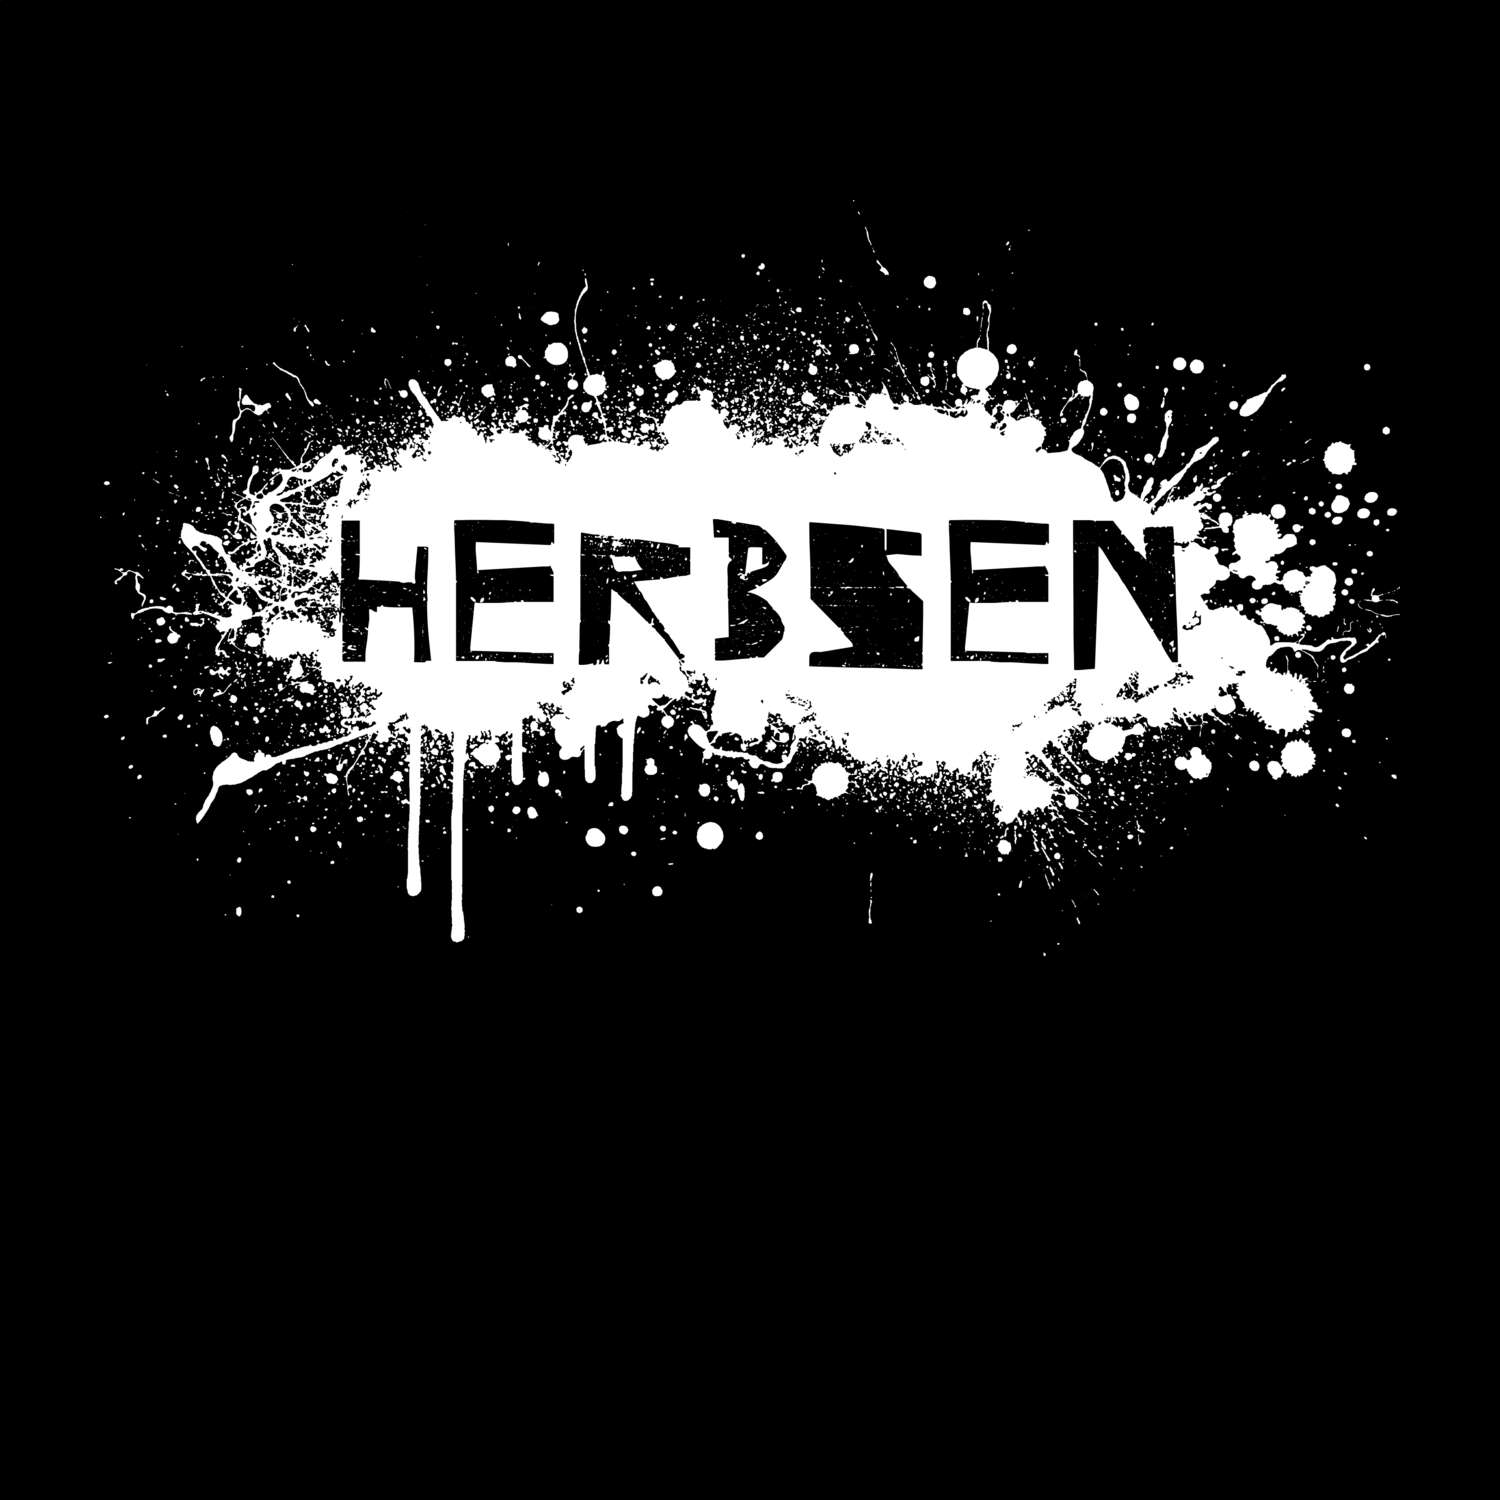 Herbsen T-Shirt »Paint Splash Punk«